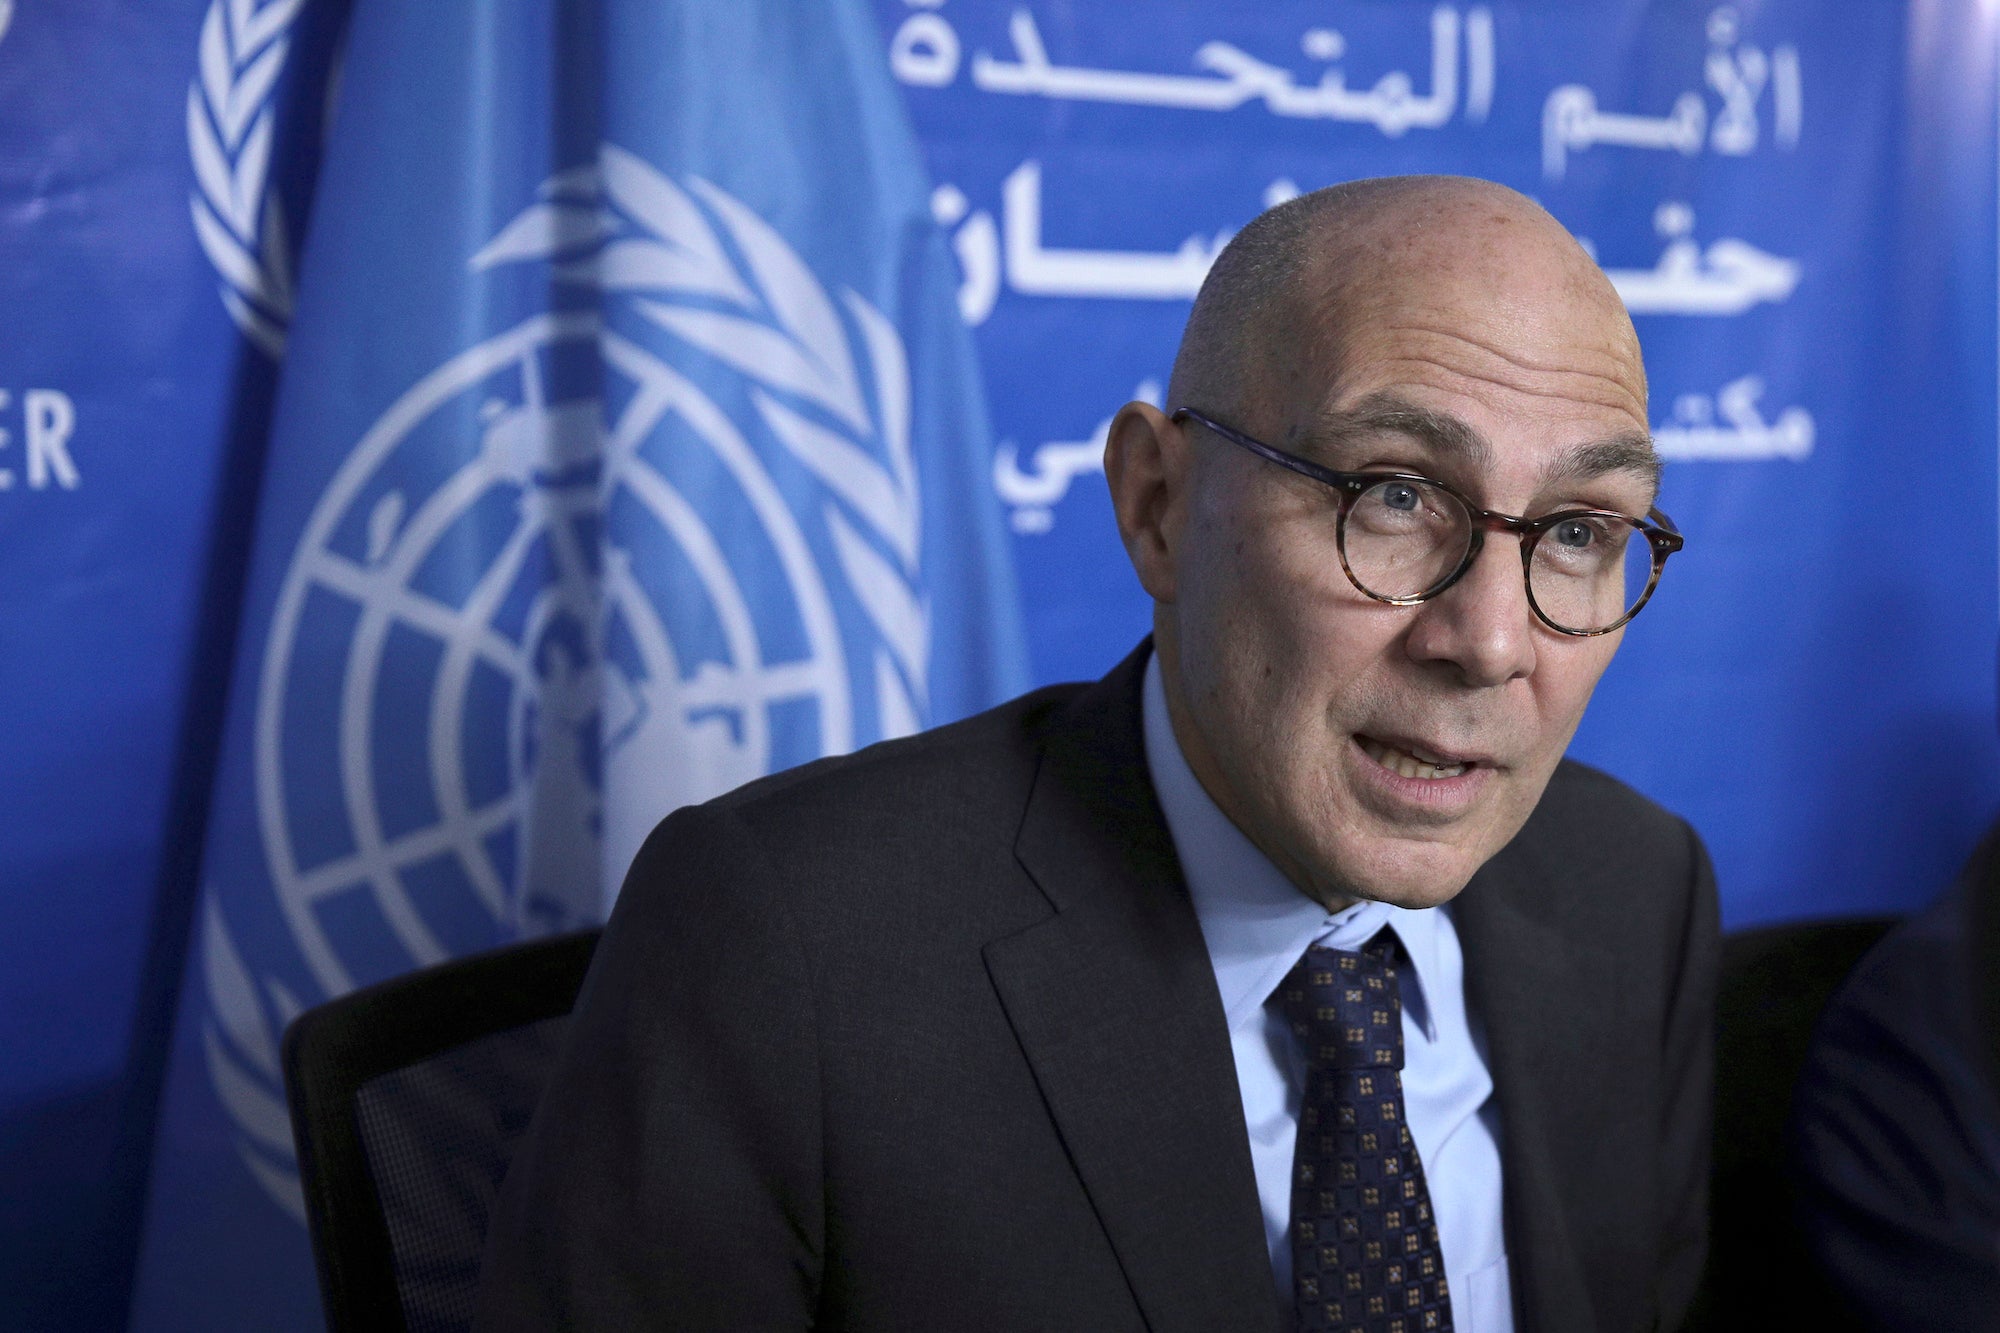 مفوض الأمم المتحدة السامي لشحقوق الإنسان فولكر تورك يتحدث في مؤتمر صحفي في الخرطوم، السودان، 16 نوفمبر/تشرين الثاني 2022.